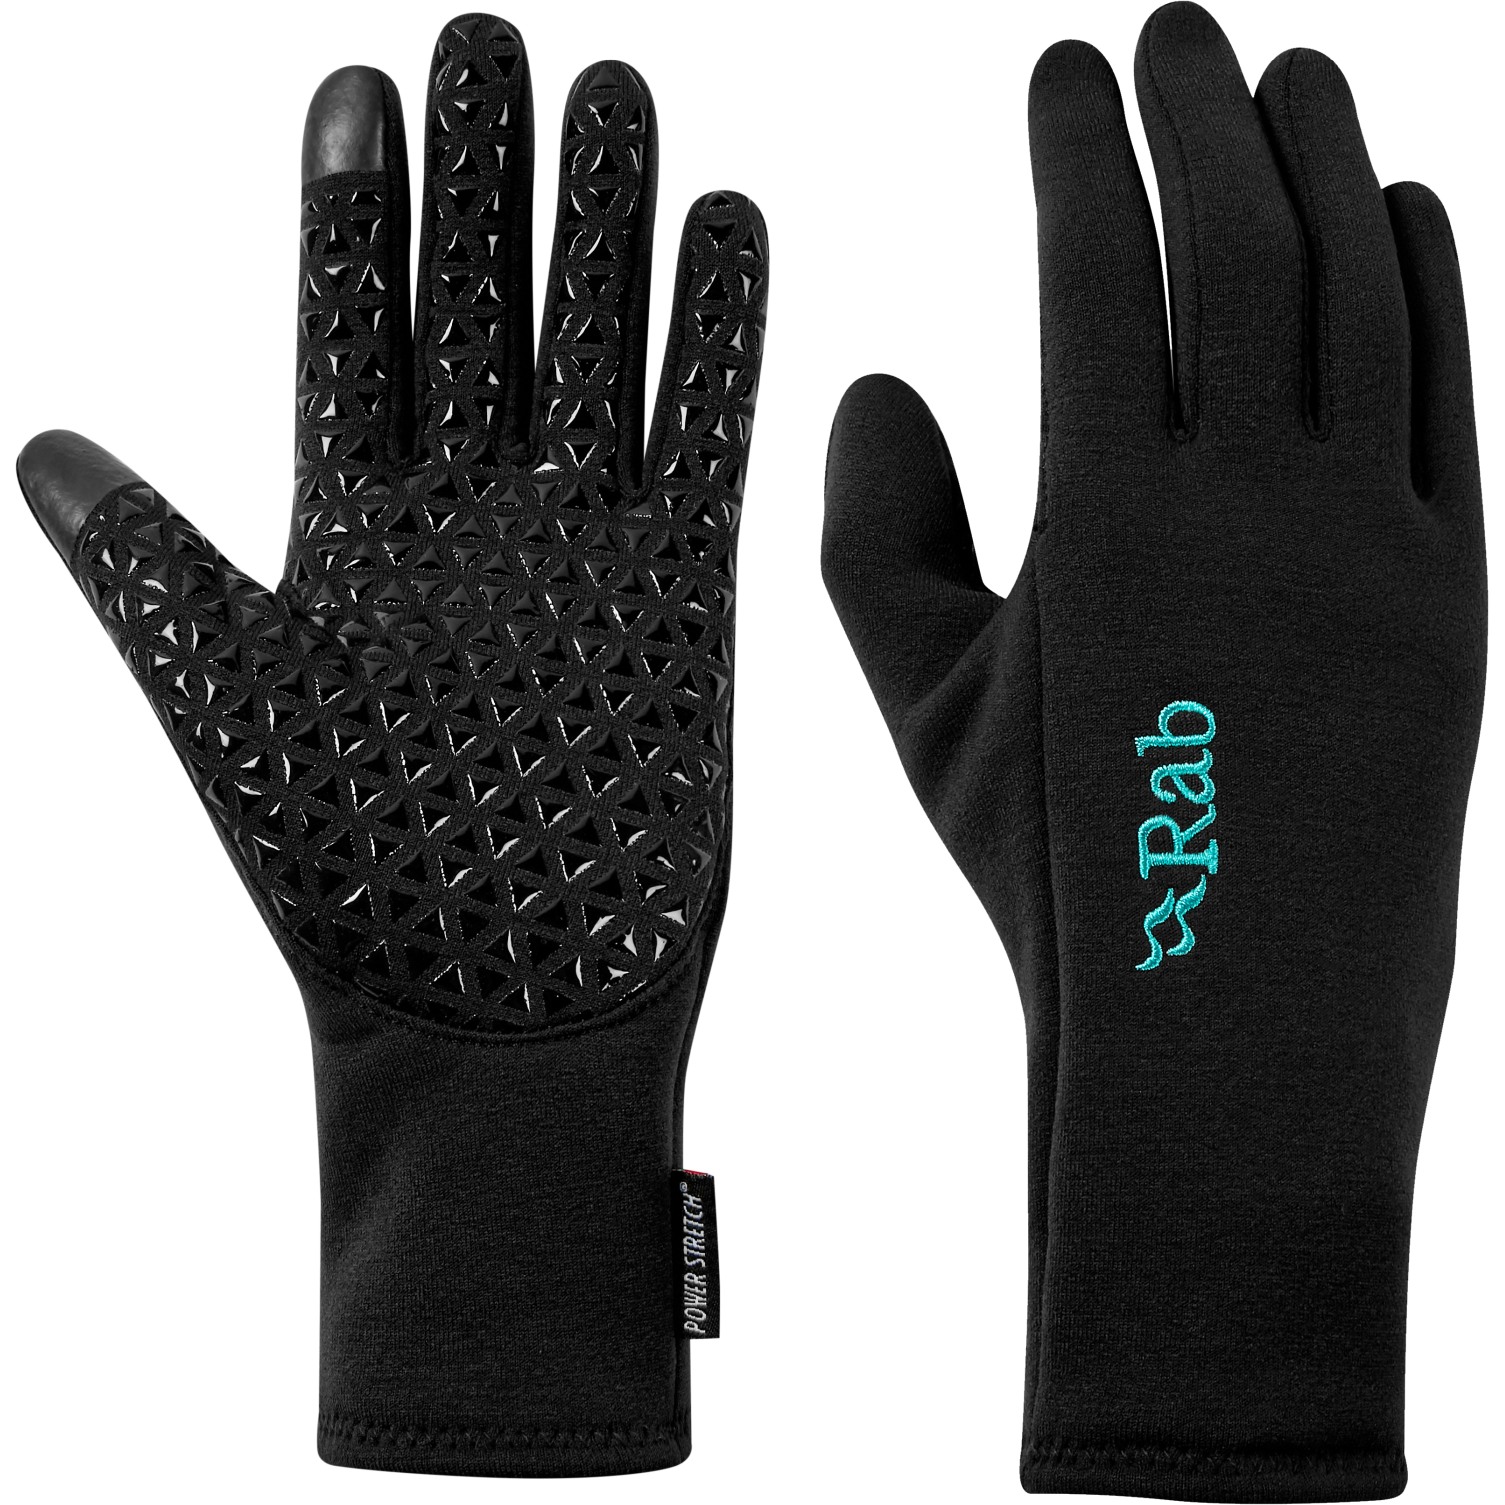 Produktbild von Rab Power Stretch Contact Grip Damen Handschuhe - schwarz